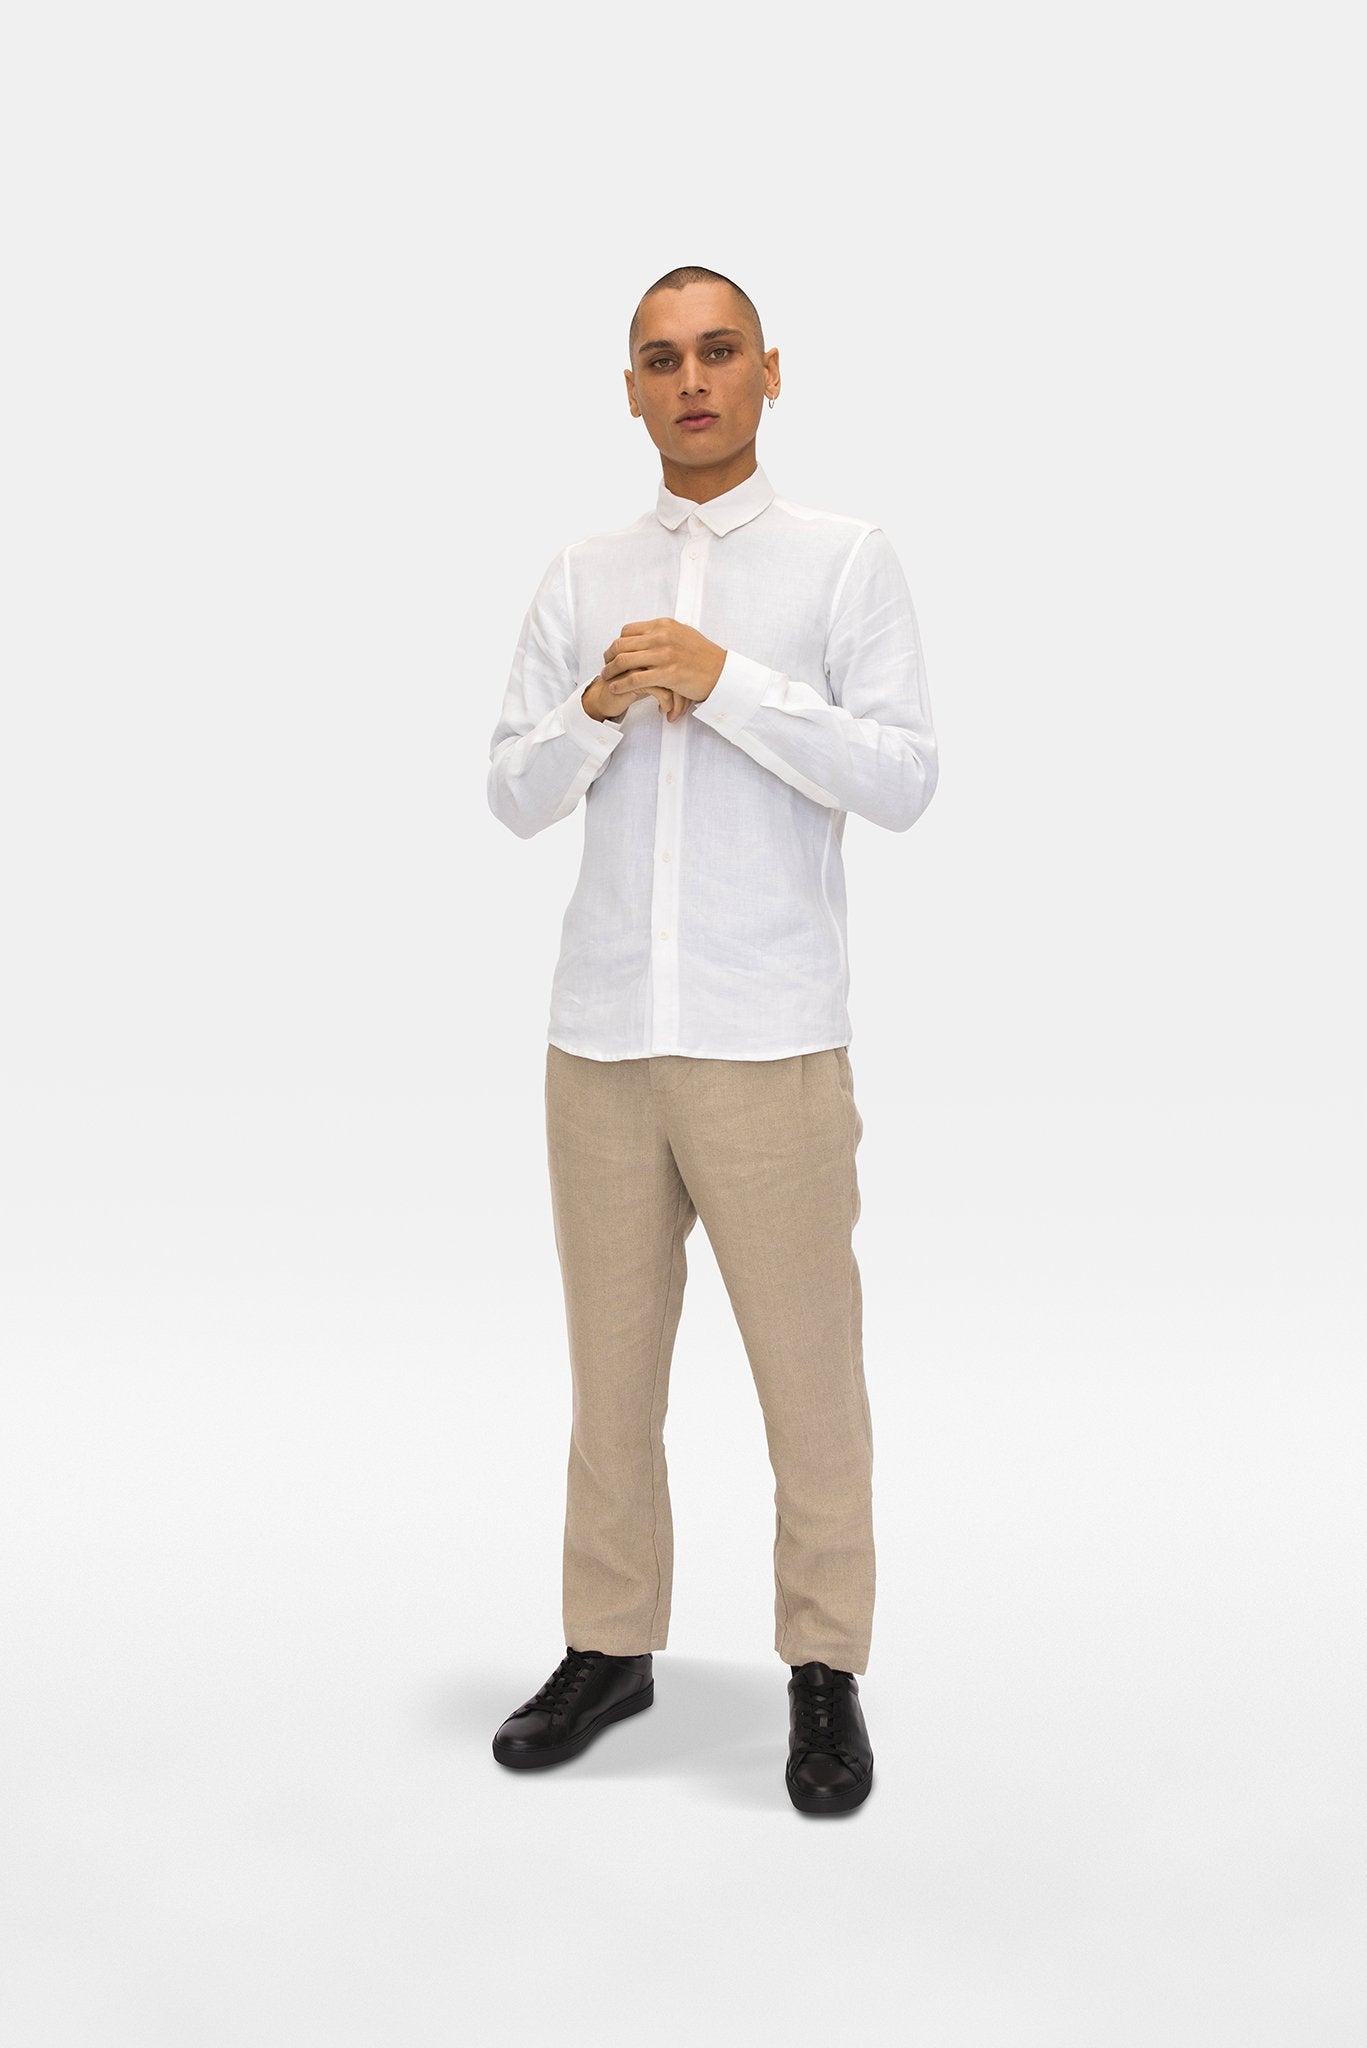 A.BCH A.04 White Long Sleeve Button Up Shirt in Organic Linen